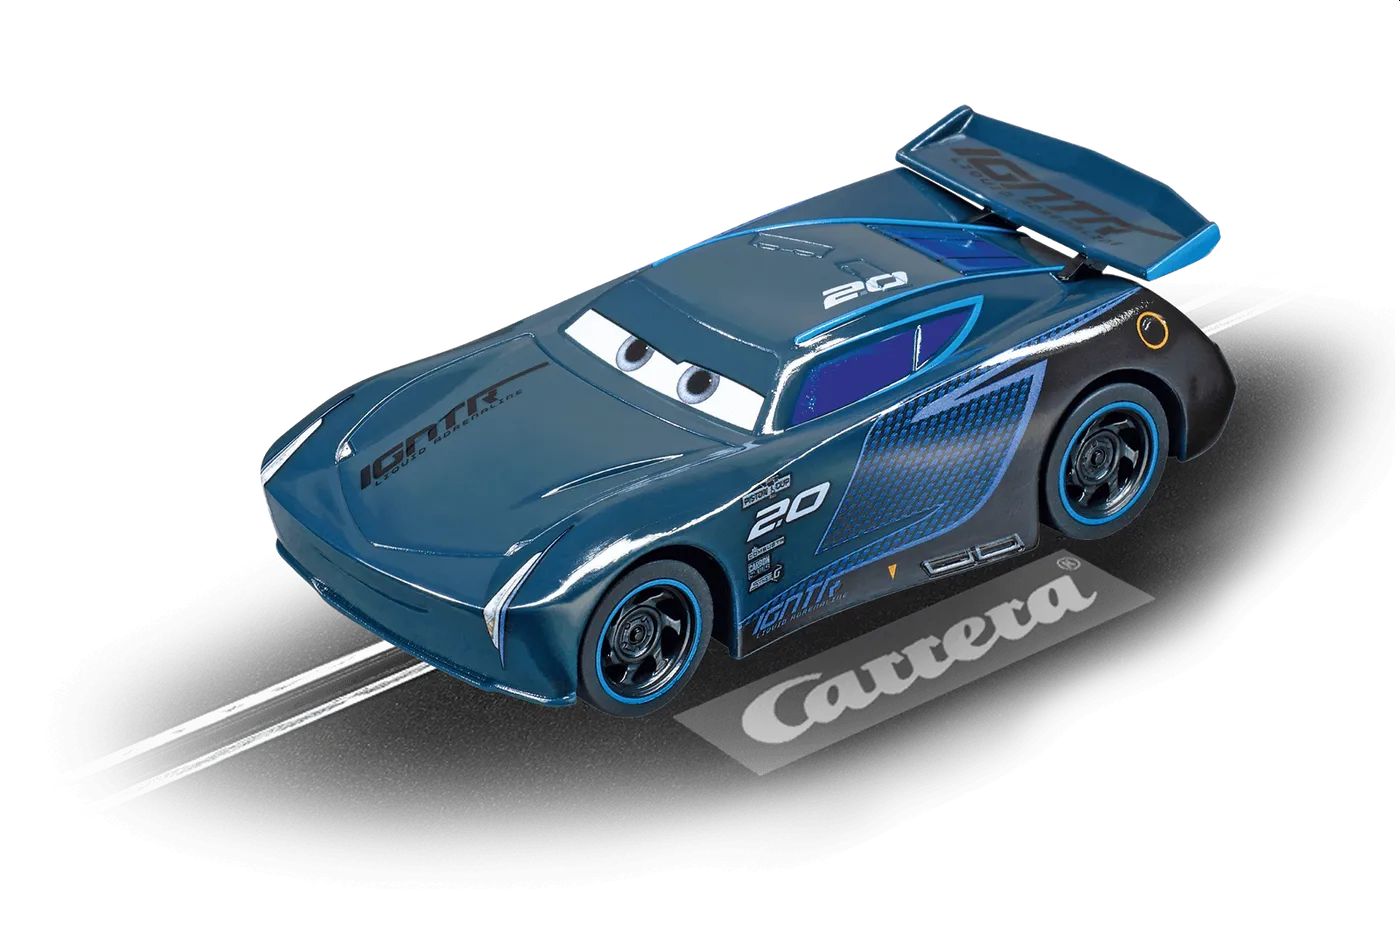 Instrukcja obsługi Mattel UNO Cars 2 (1 stron)